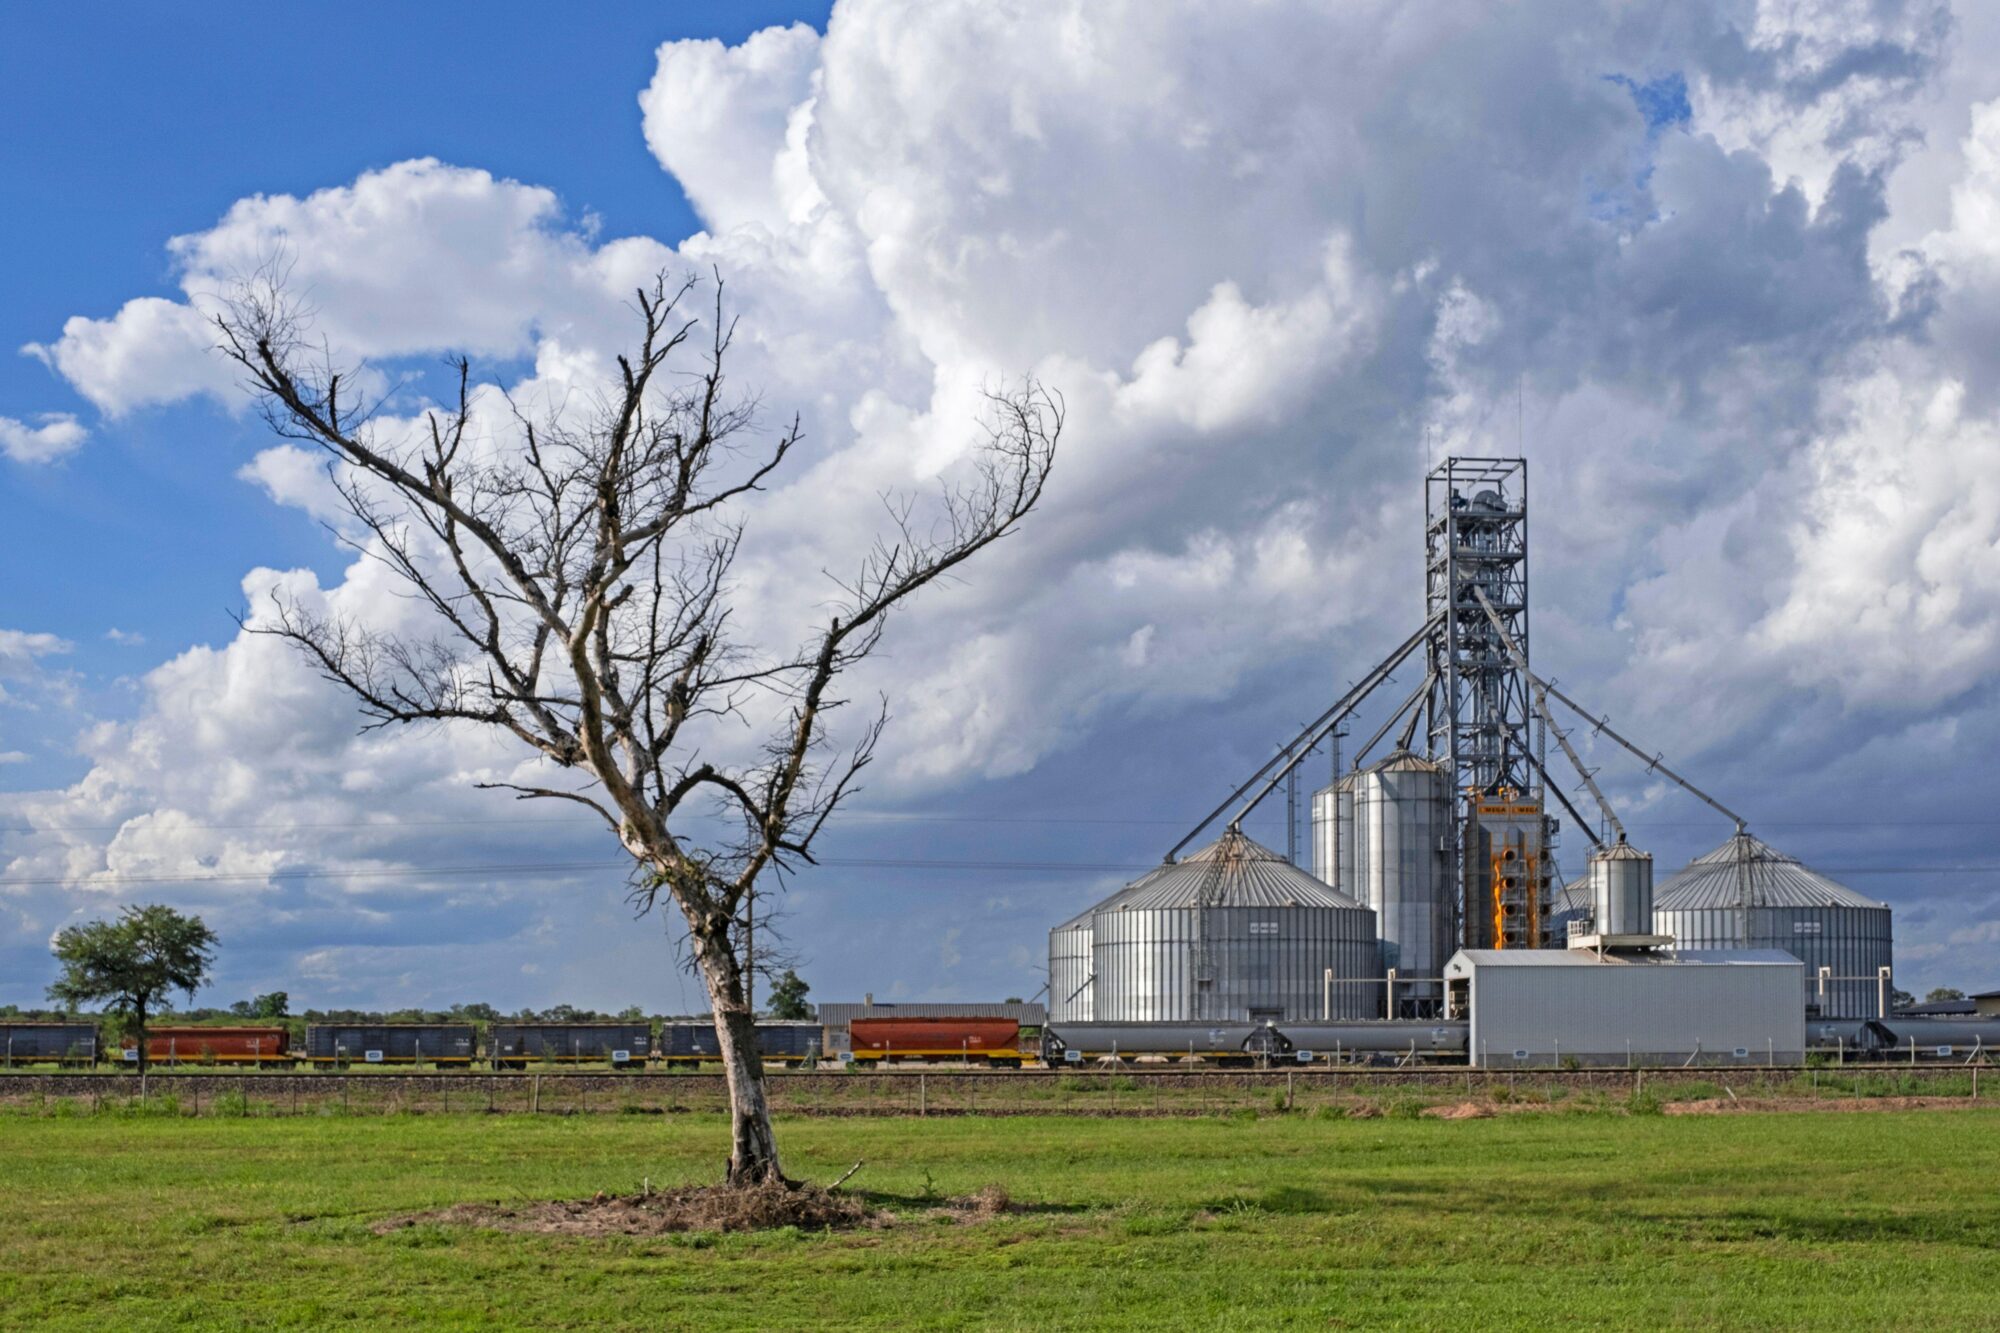 Trem carregando grãos em silos agrícolas em Chaco, Argentina.